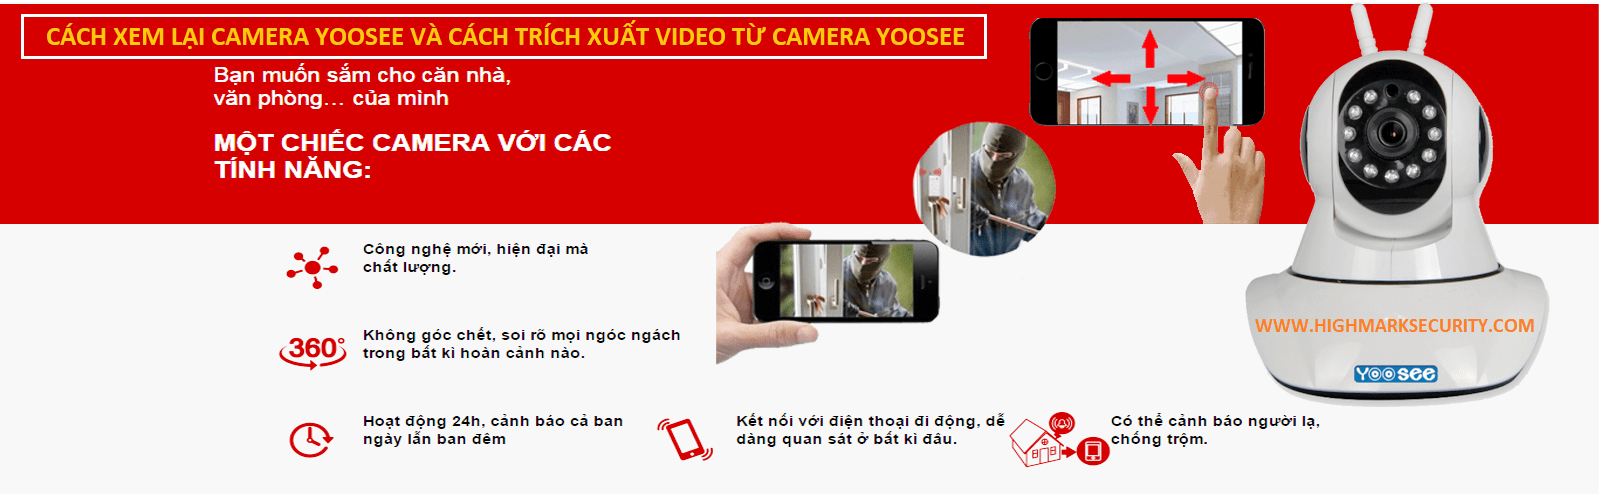 Cách xem lại camera Yoosee và cách lấy video từ Camera Yoosee-min